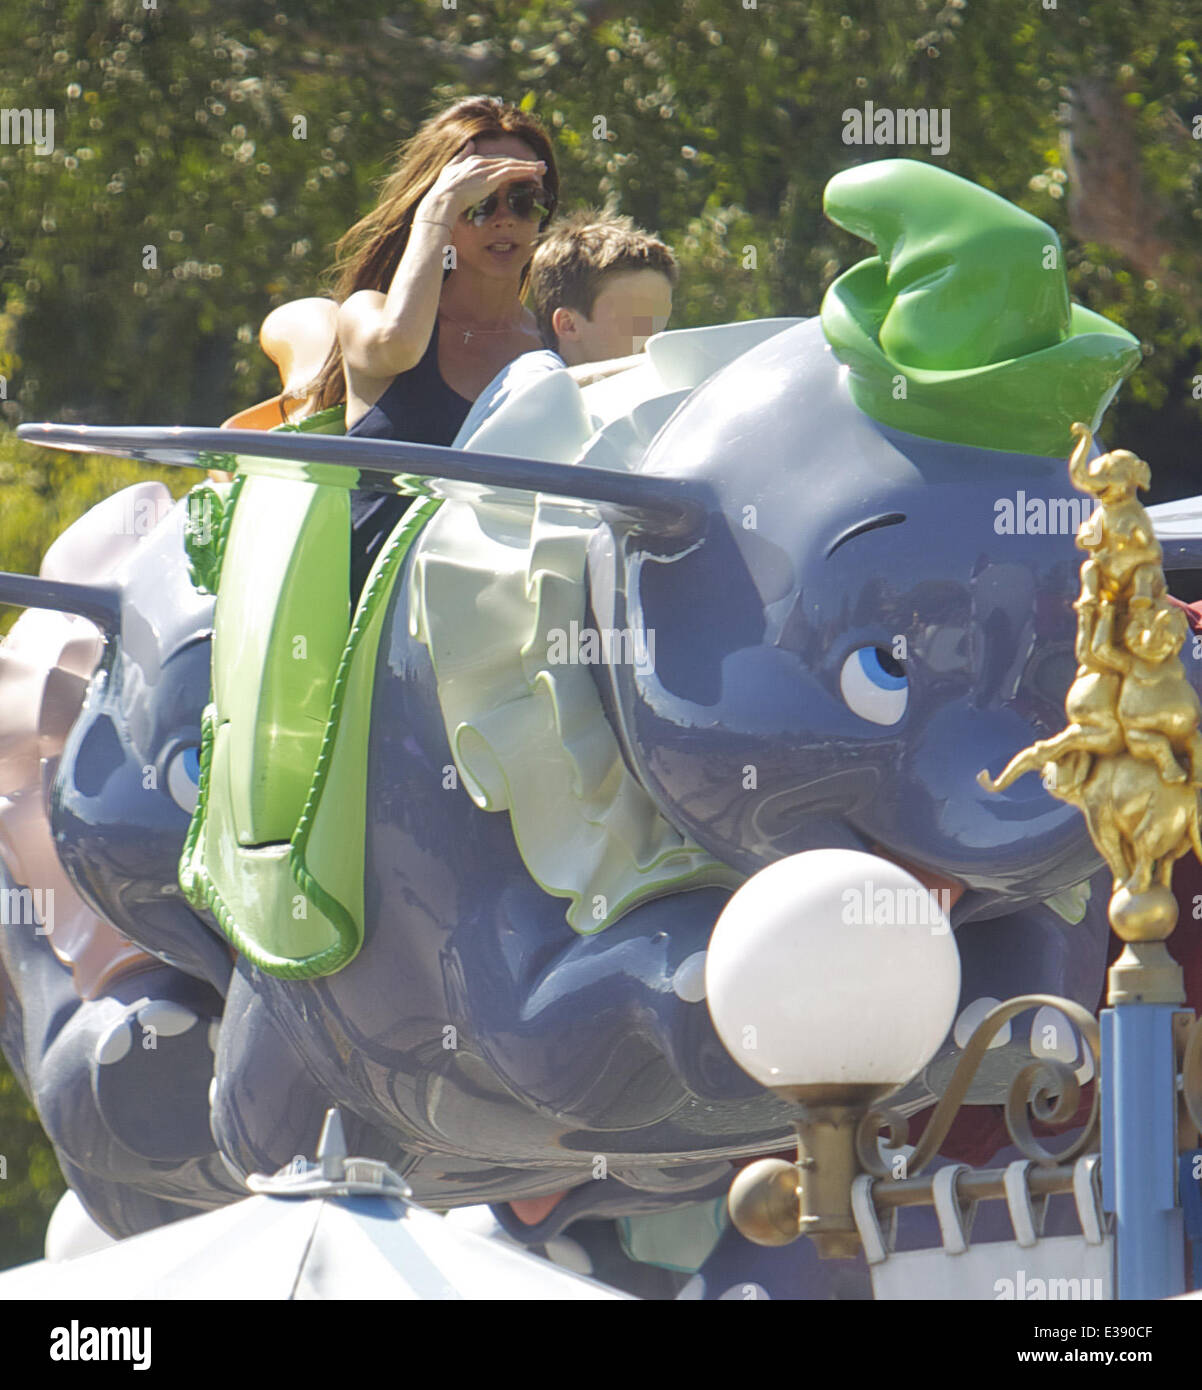 Verbringen Sie Zeit mit ihren Kindern im Disneyland, David und Victoria Beckham. Die berühmte Familie verbrachte viel Zeit im Fantasyland, Reiten die Dumbo-Fahrt, ein Karussell und eine Kindereisenbahn. Kleine Harper entdeckt wurde, genießen eine Karussellfahrt mit ihrem Bruder Stockfoto